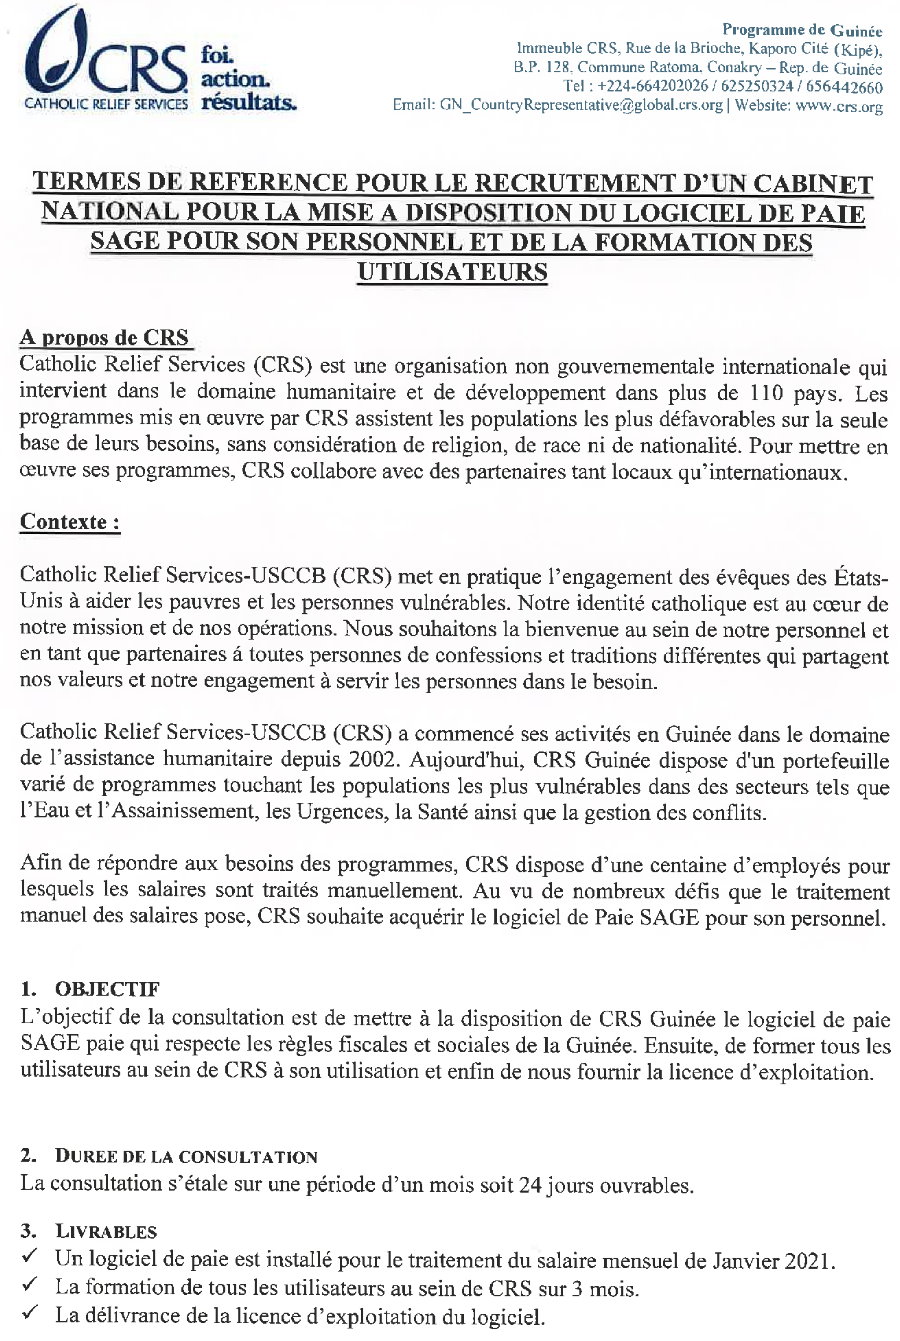 Termes de Références CRS en guinée pour le Recrutement d'Un Cabinet  - Appel d'Offres Page 1